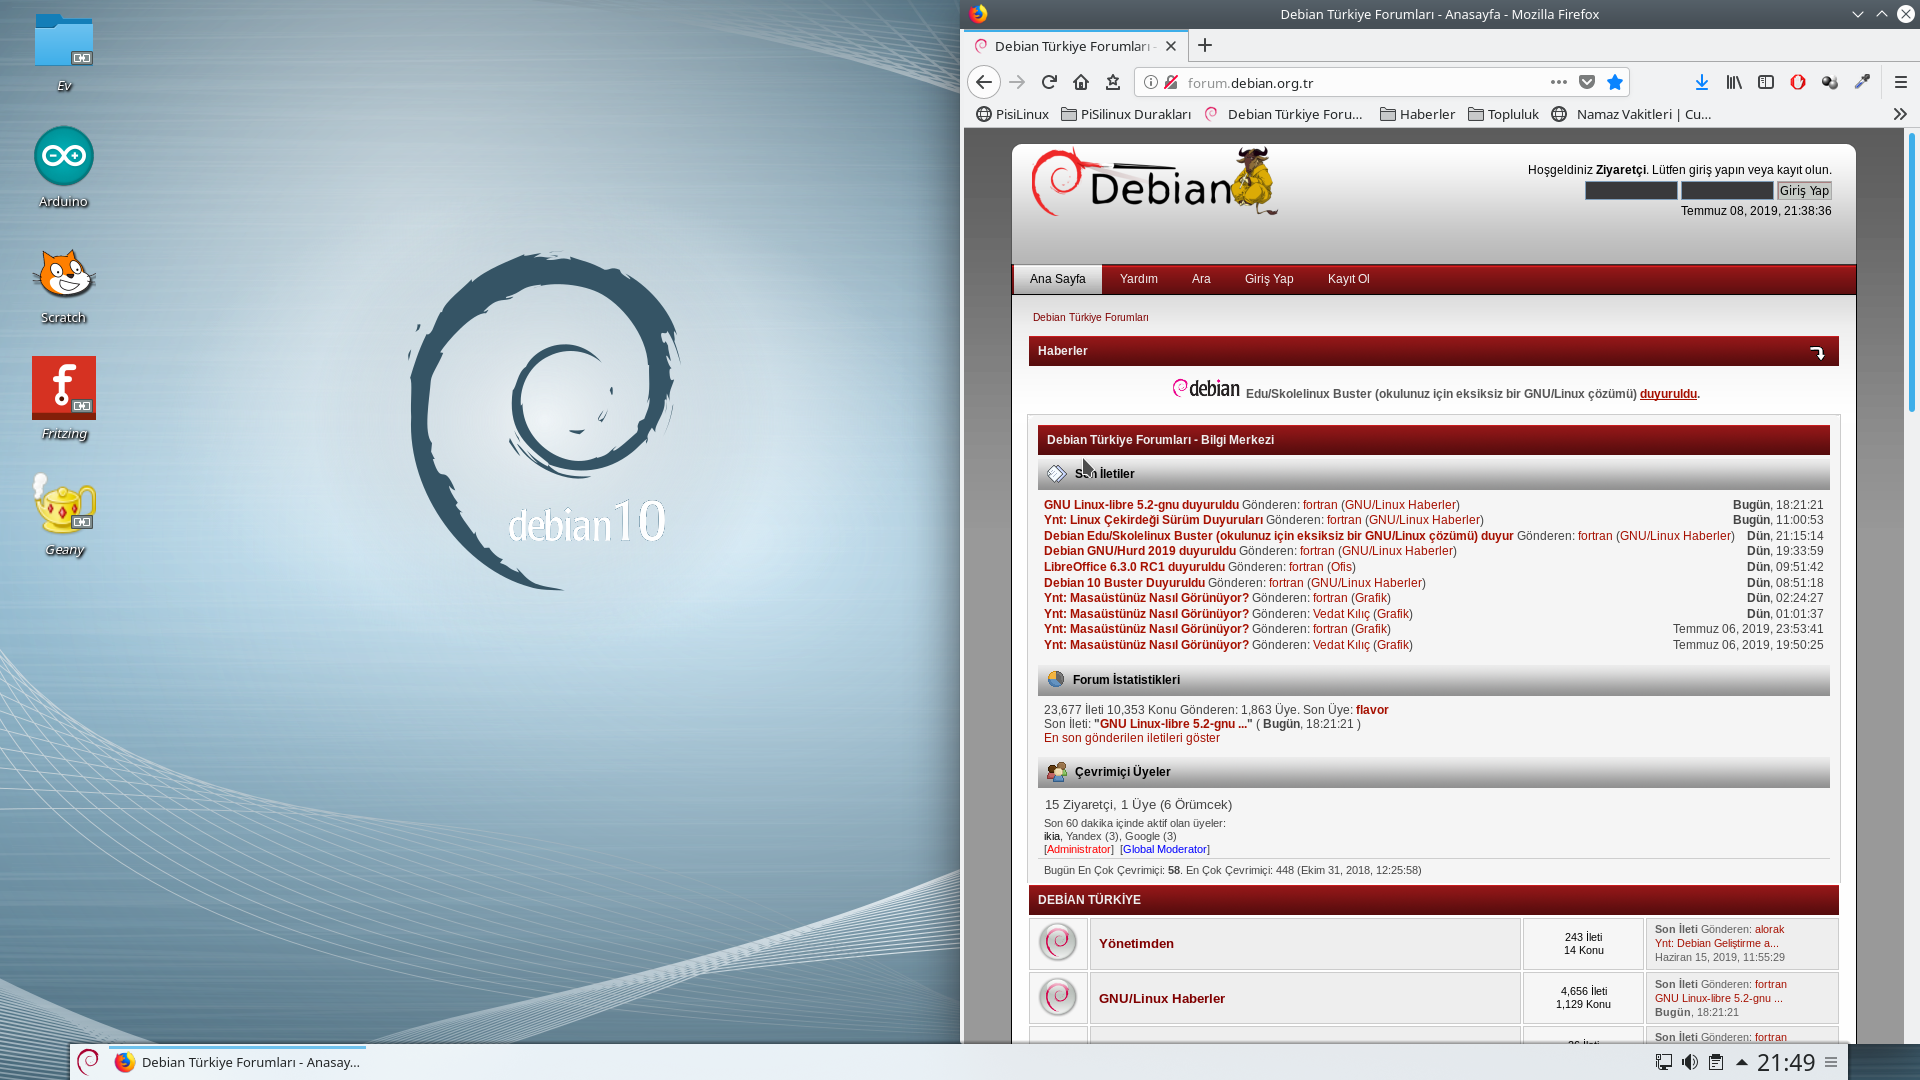 Debian mirror